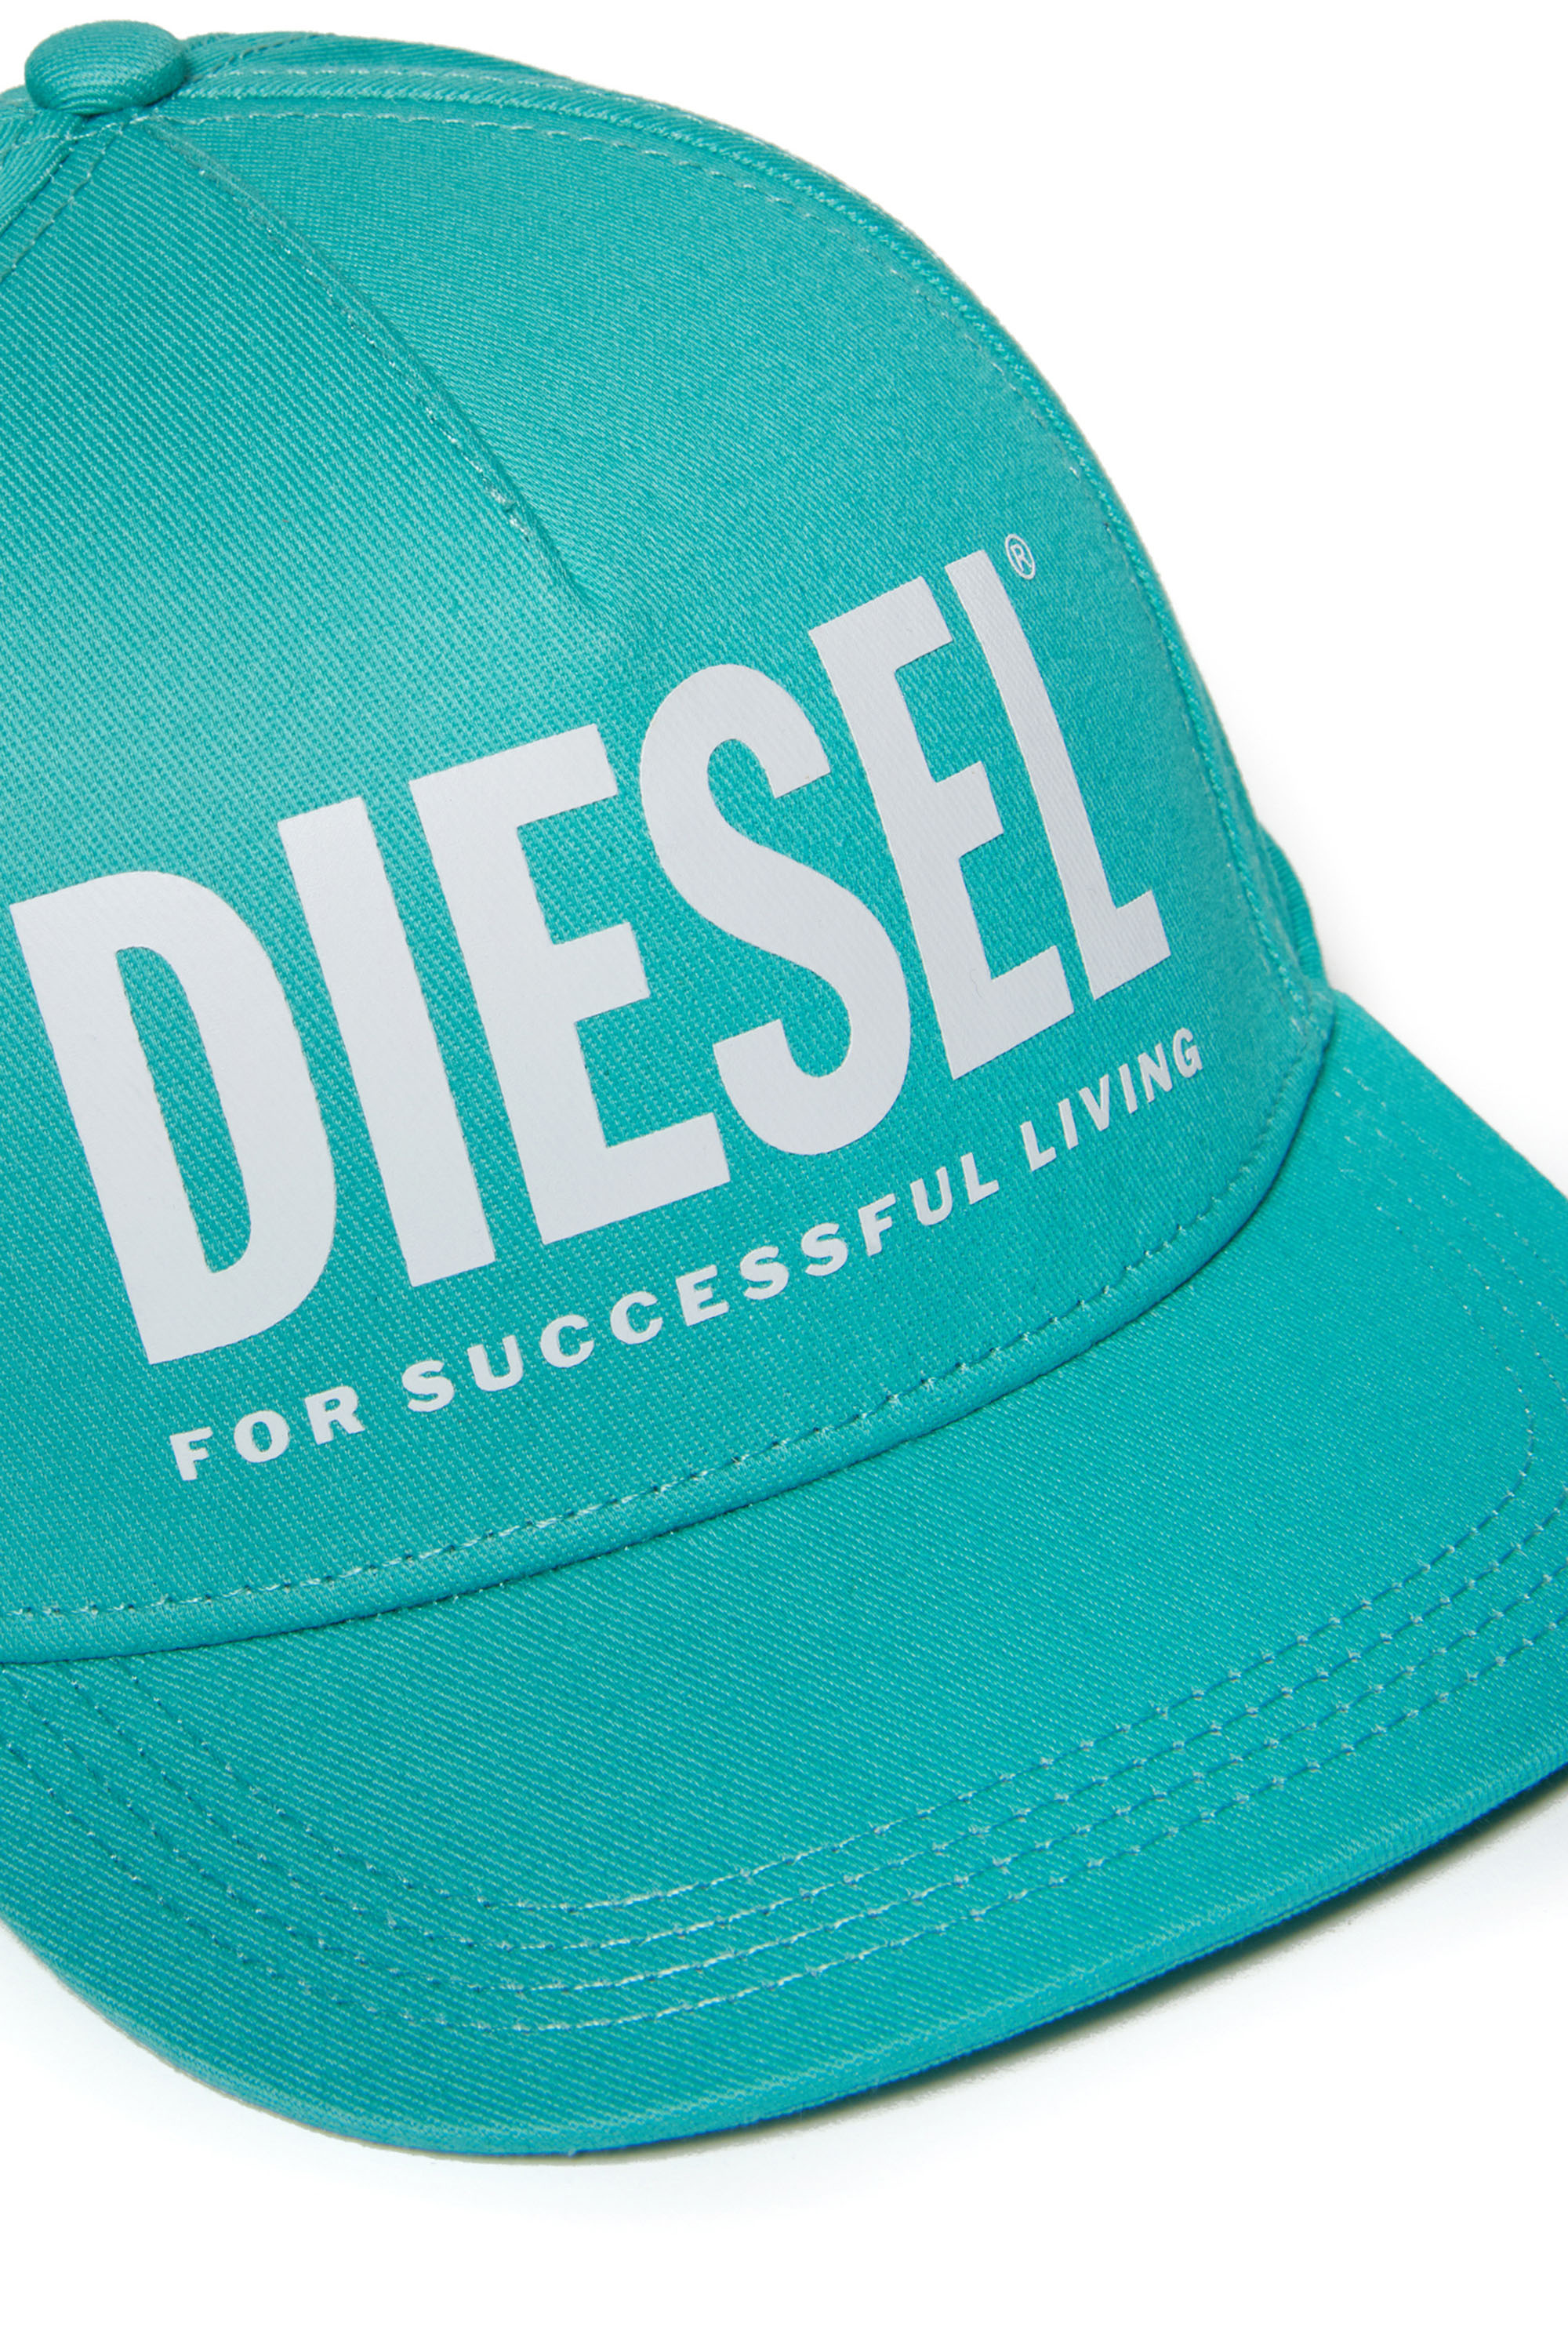 Diesel - FOLLY, Vert - Image 3